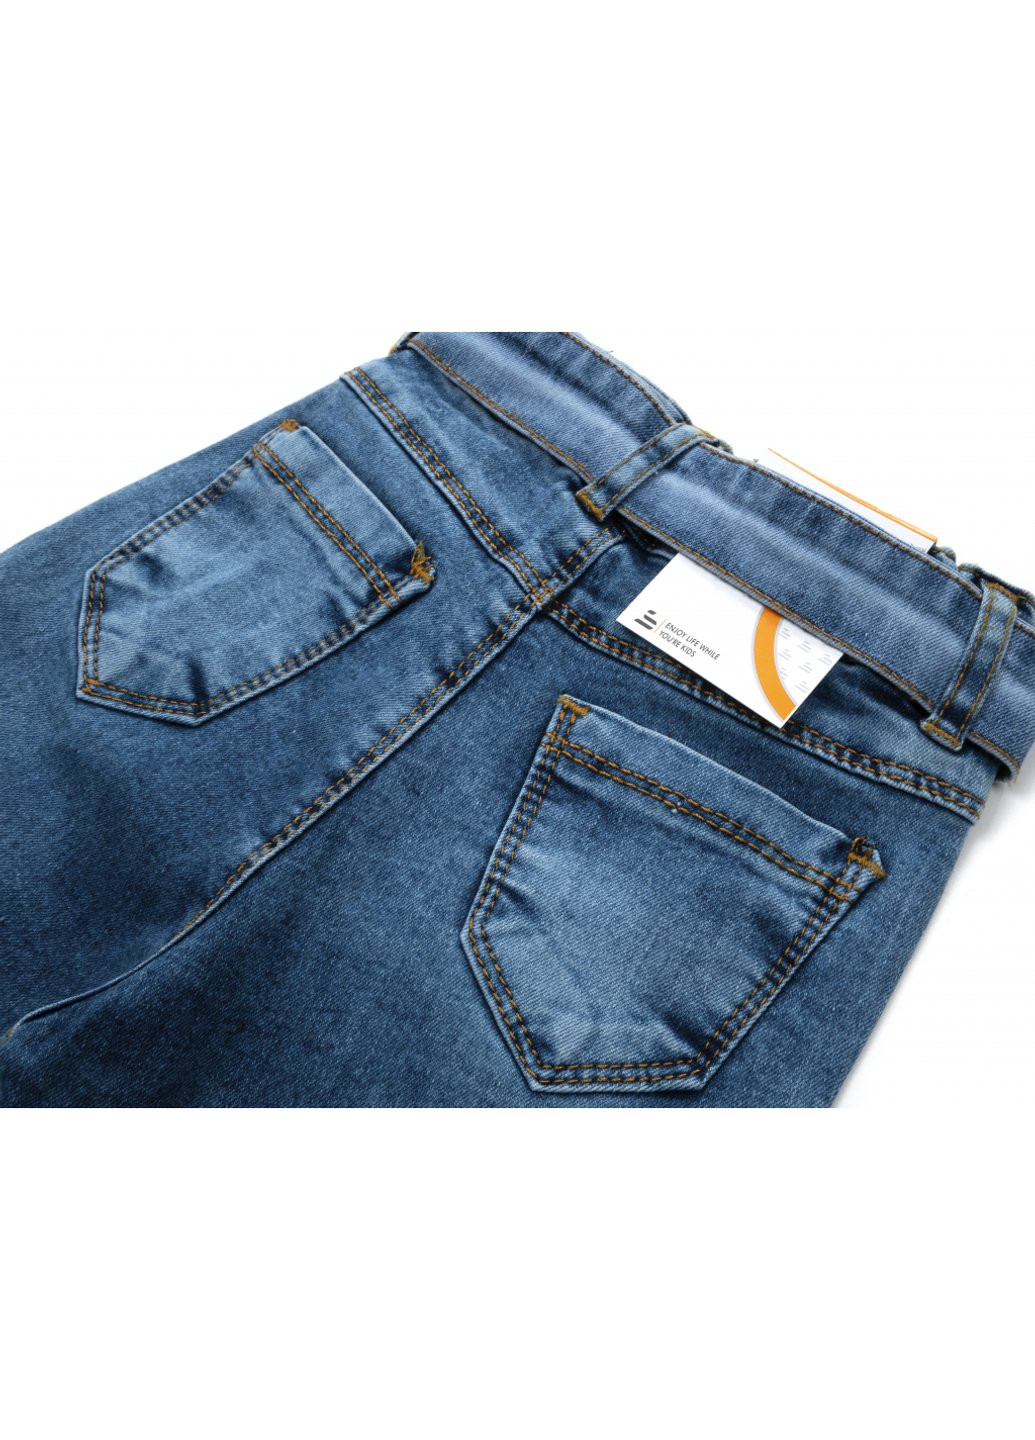 Голубые демисезонные джинсы с поясом (58162-110g-blue) Sercino